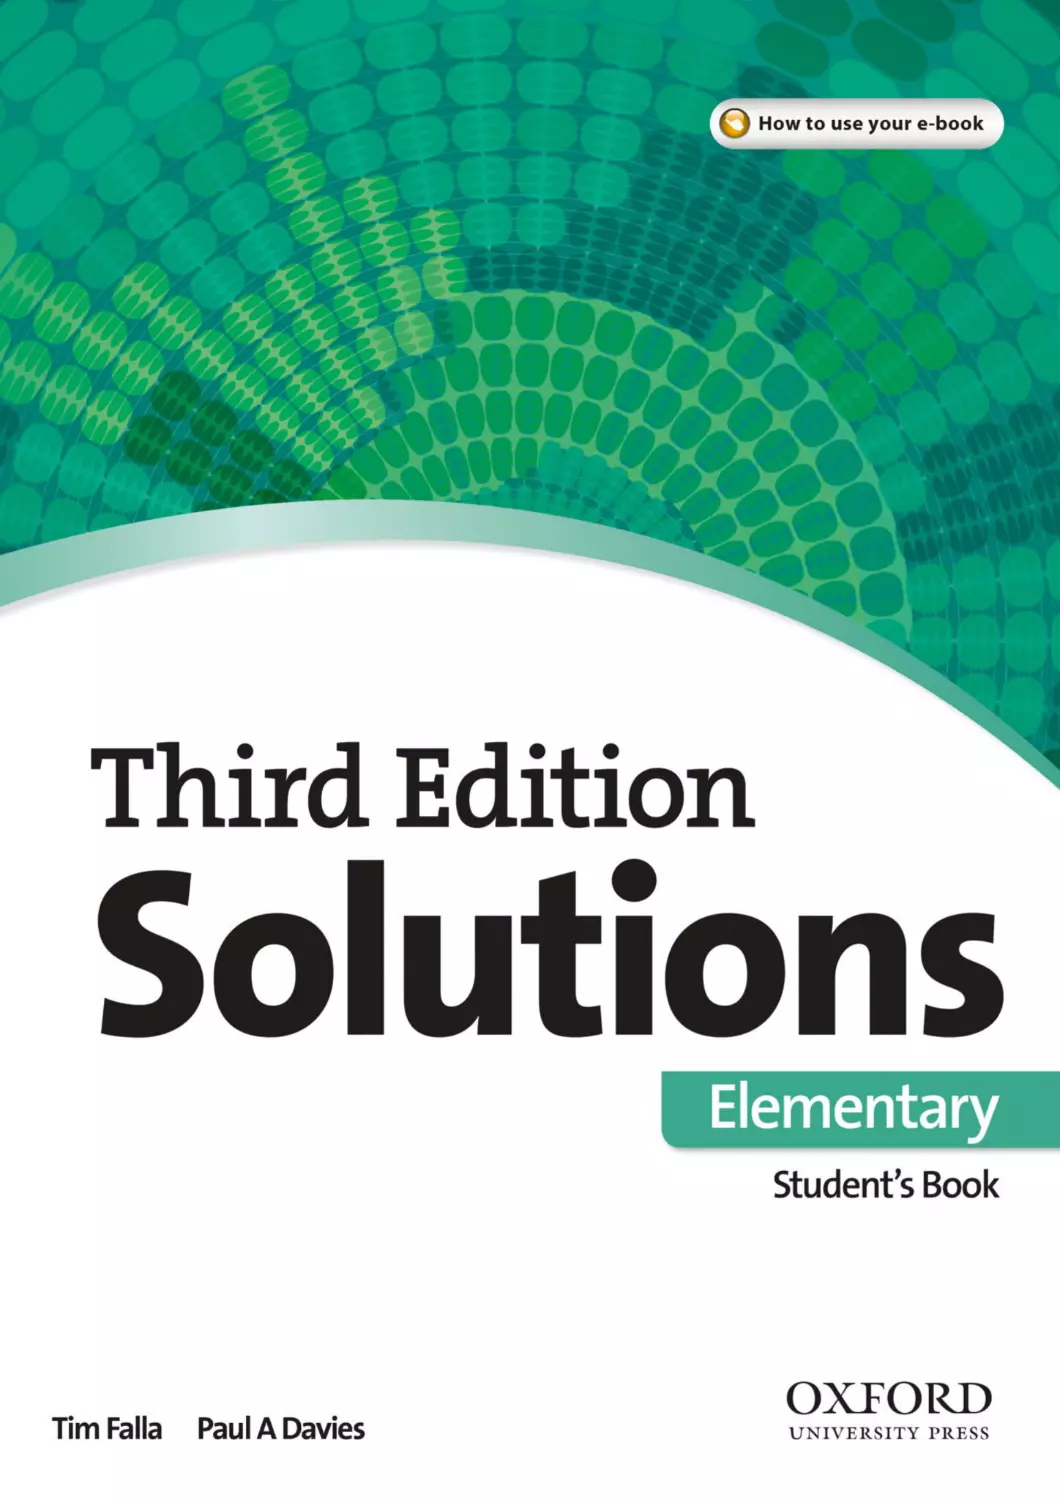 Solutions elementary. Solutions Elementary 3rd Edition. Солюшнс элементари 3 издание. Solutions Elementary 3rd Edition Workbook. Учебник third Edition solutions Elementary.